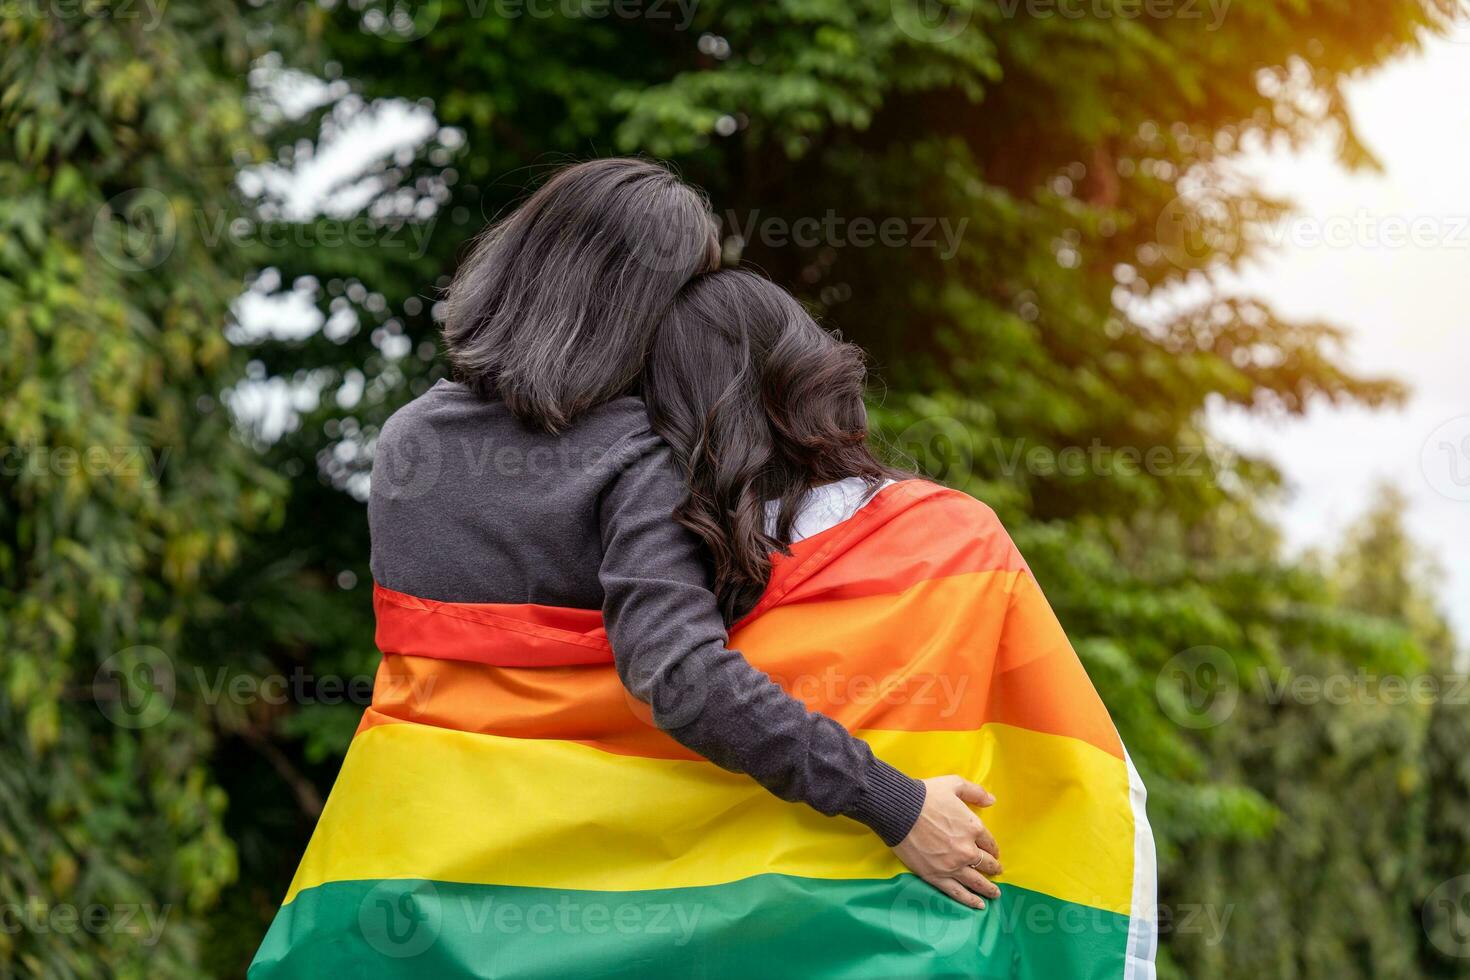 lesbiana Pareja abrazando y participación lgbt arco iris banderas homosexualidad concepto. foto